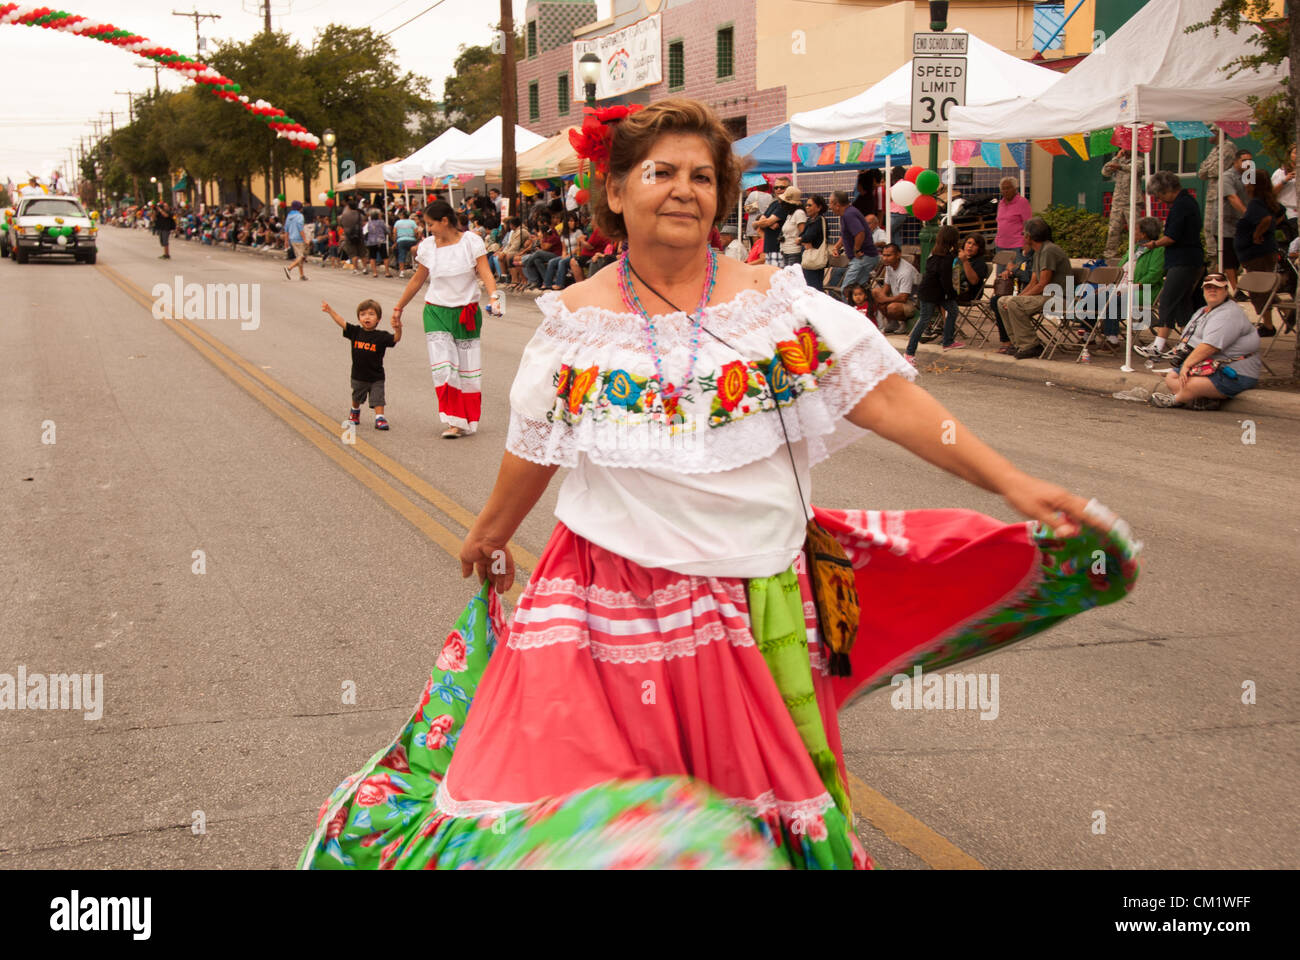 15 Settembre 2012 San Antonio, Texas, Stati Uniti d'America - Durante l  annuale Diez y Seis sfilata per celebrare il giorno dell indipendenza  messicana, una donna vestita di tradizione messicana danze vestiti